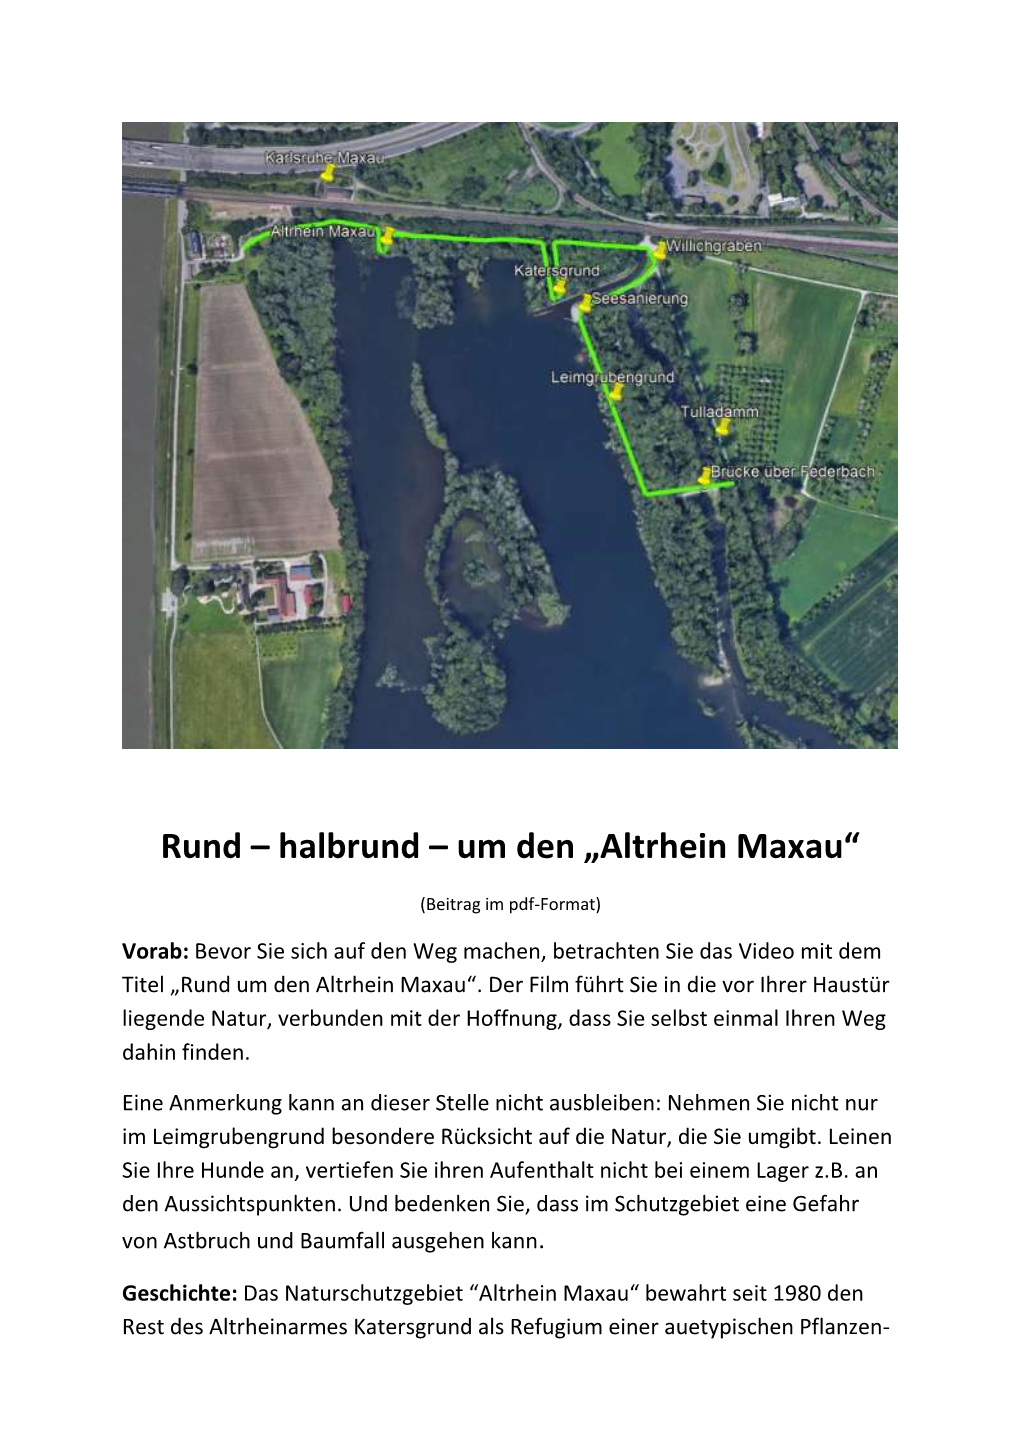 Altrhein Maxau“